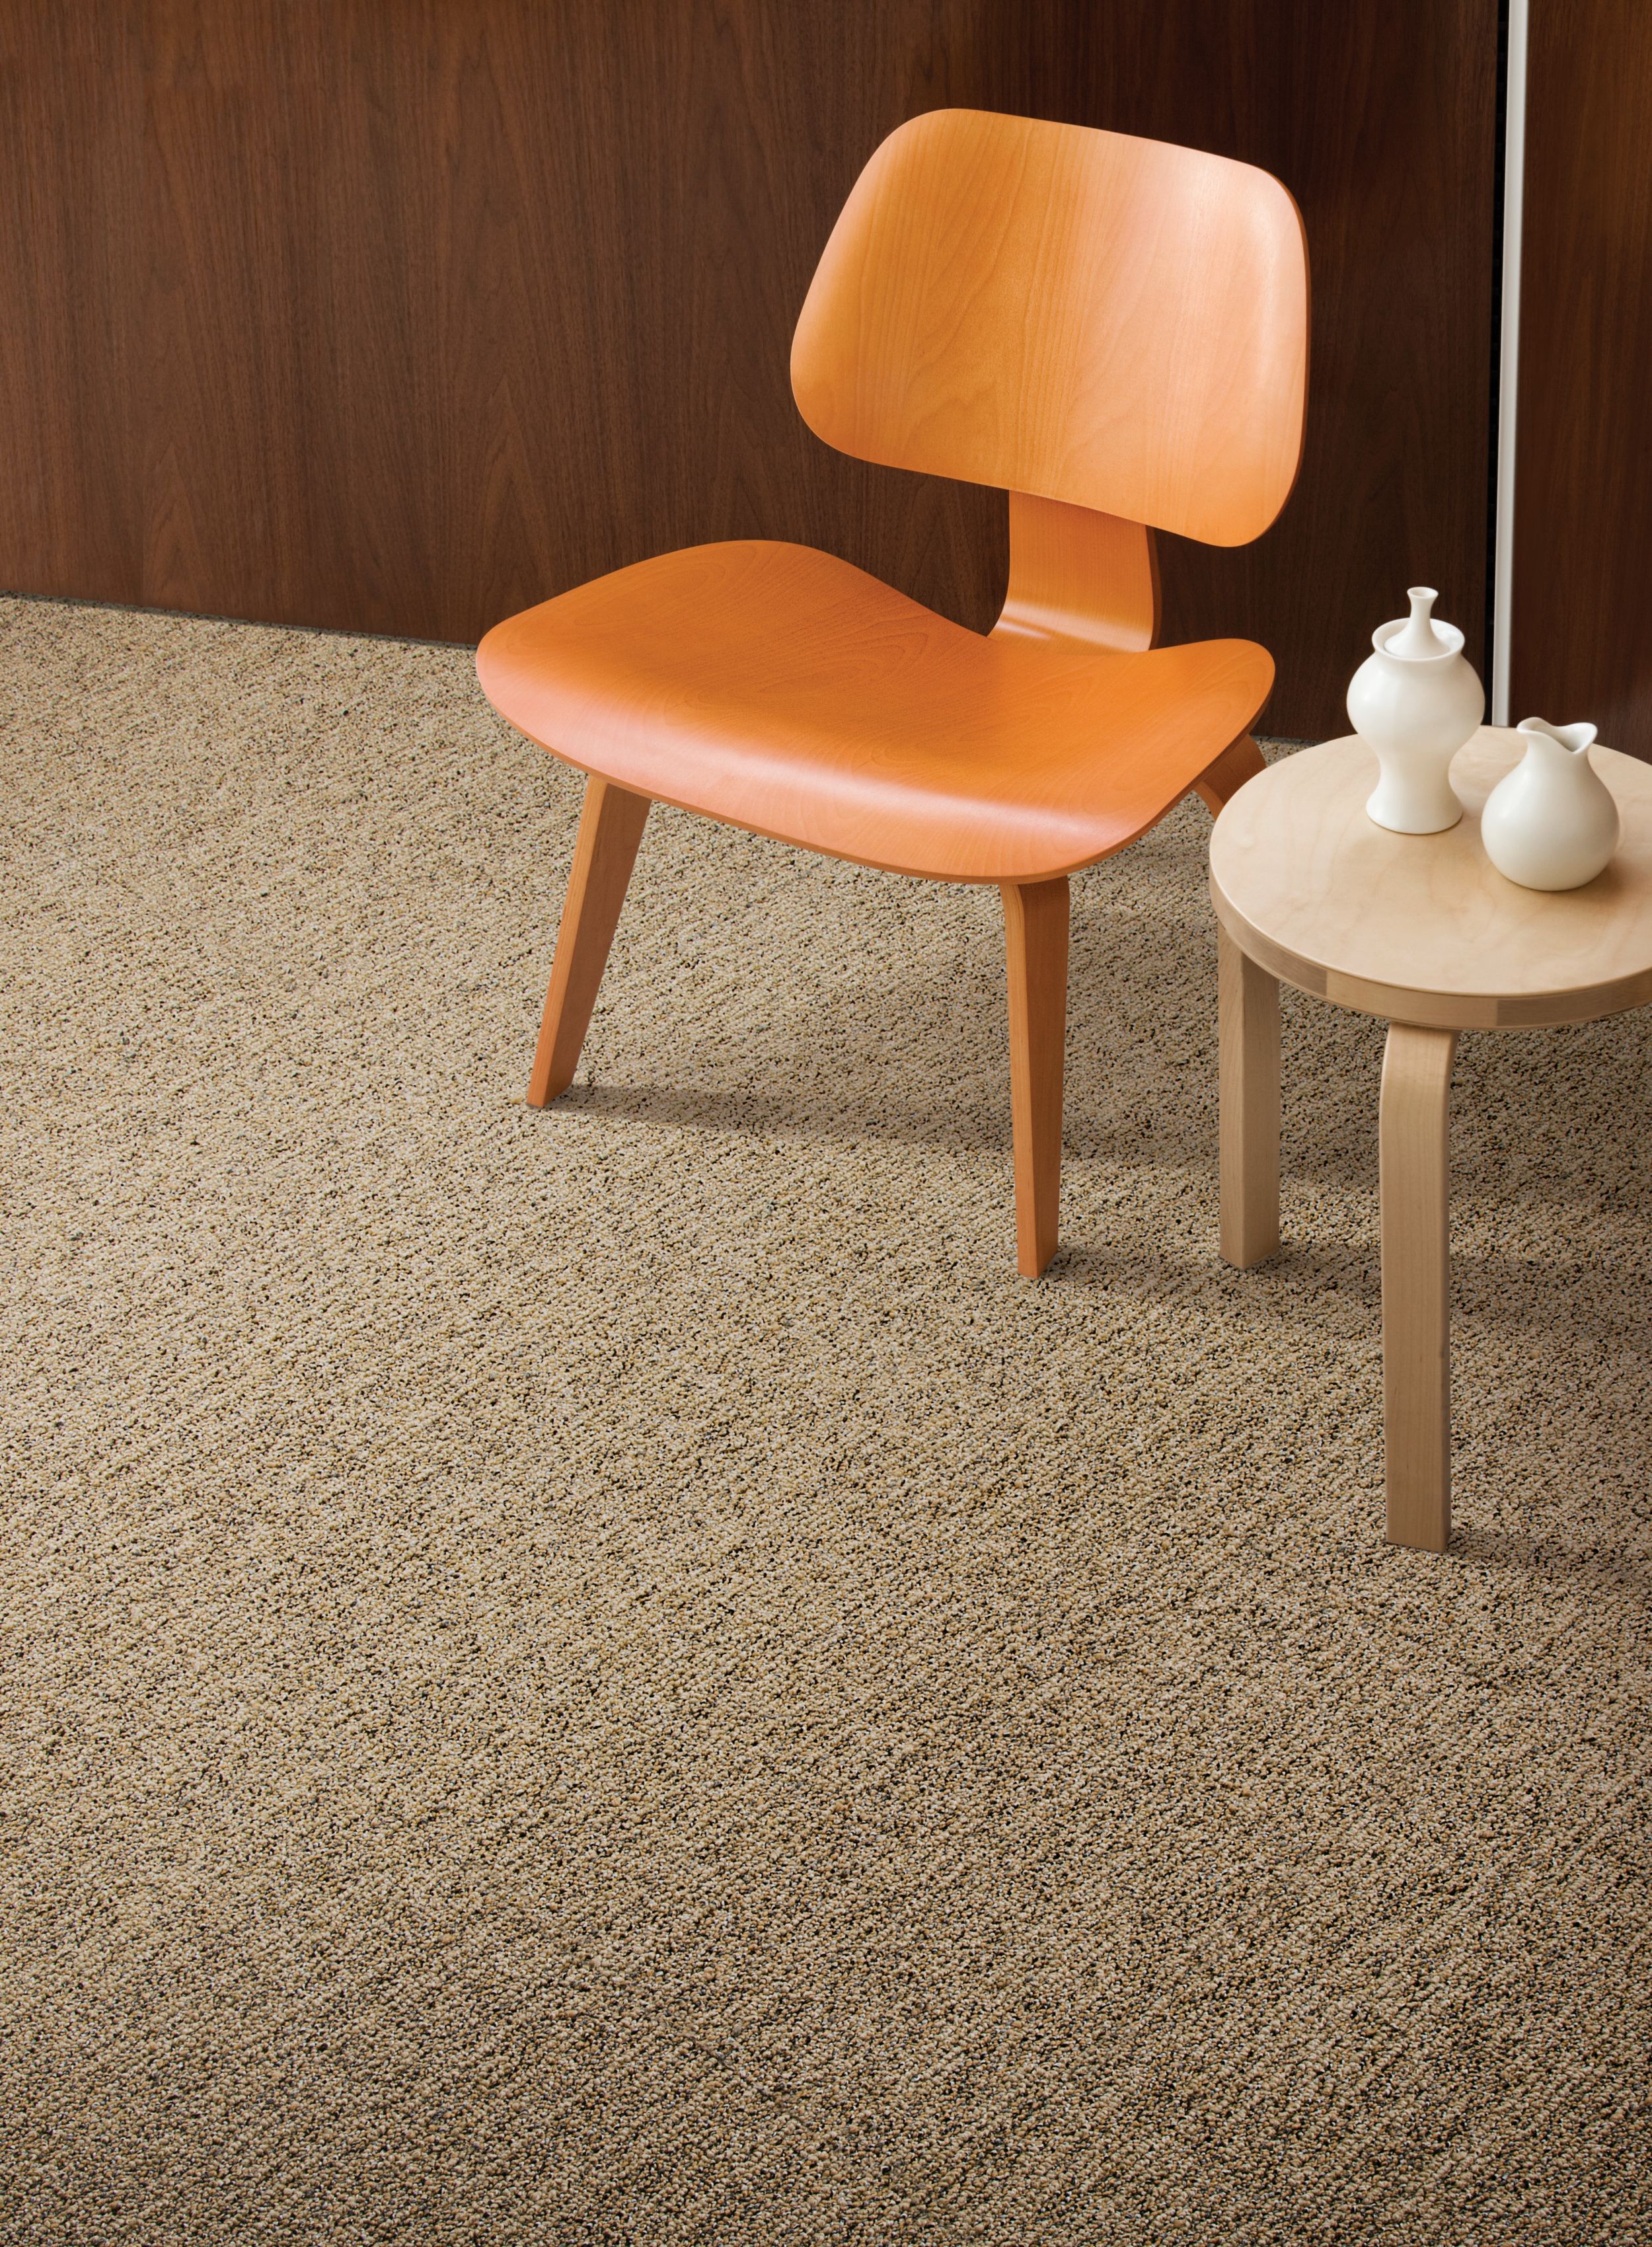 HeatherMix carpet tile in room with orange chair numéro d’image 1